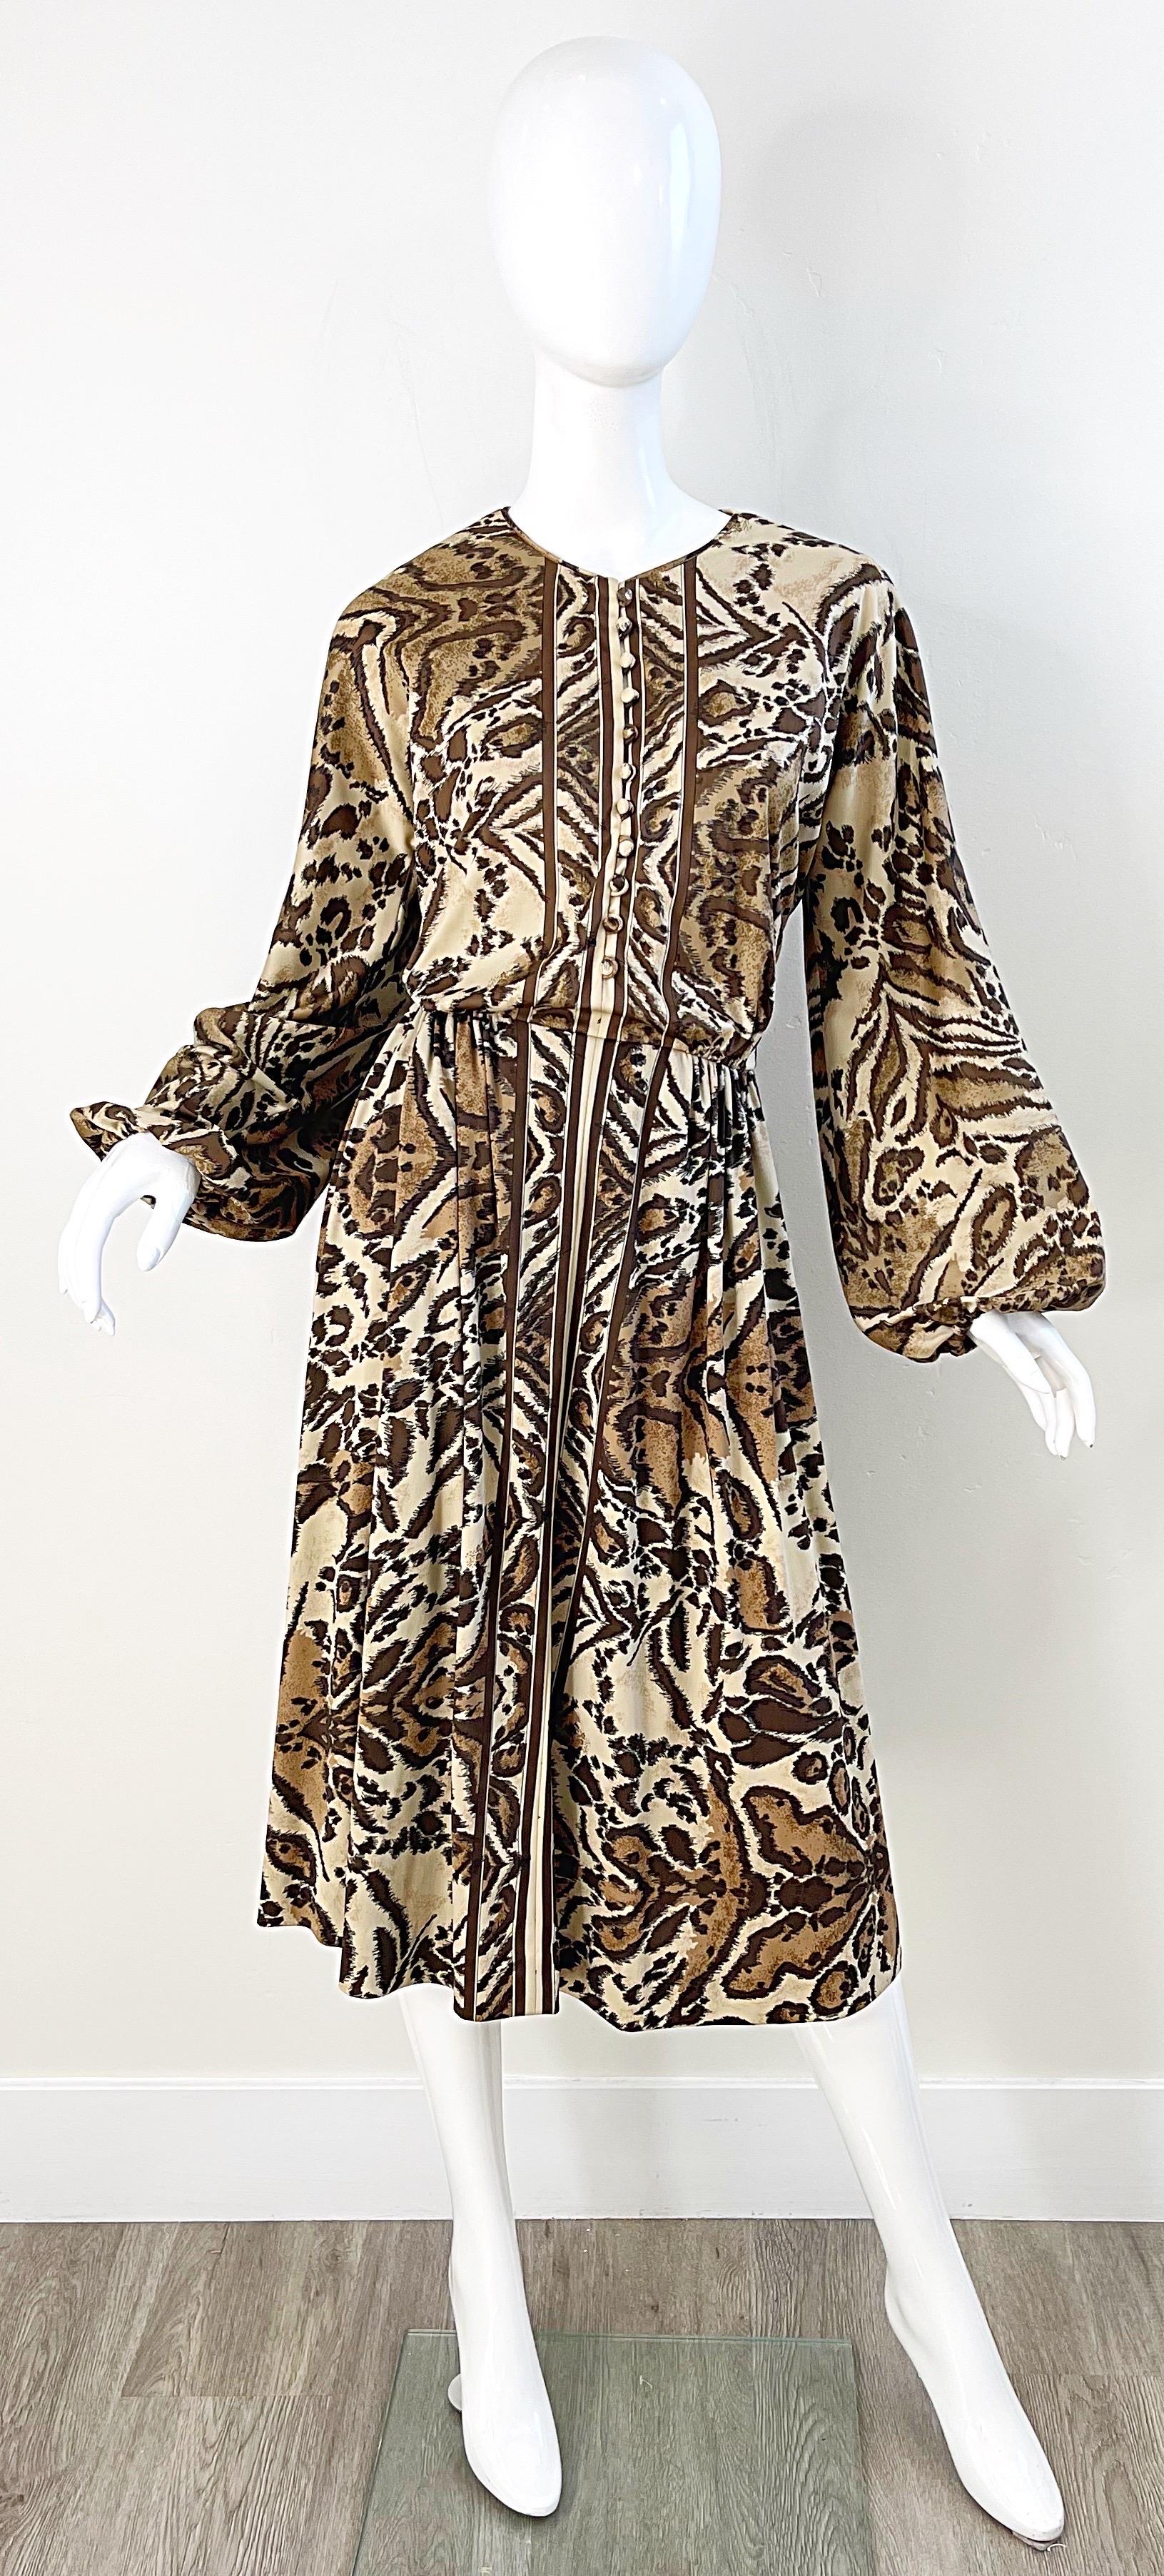 Schickes 1970er VICTOR COSTA Kleid mit Leopardenmuster und langen Läuferärmeln ! Die Vorderseite ist mit stoffbezogenen Knöpfen versehen. Maßgeschneidertes Mieder mit schmeichelhaftem und nachgiebigem Rock. TASCHEN an beiden Seiten der Taille.